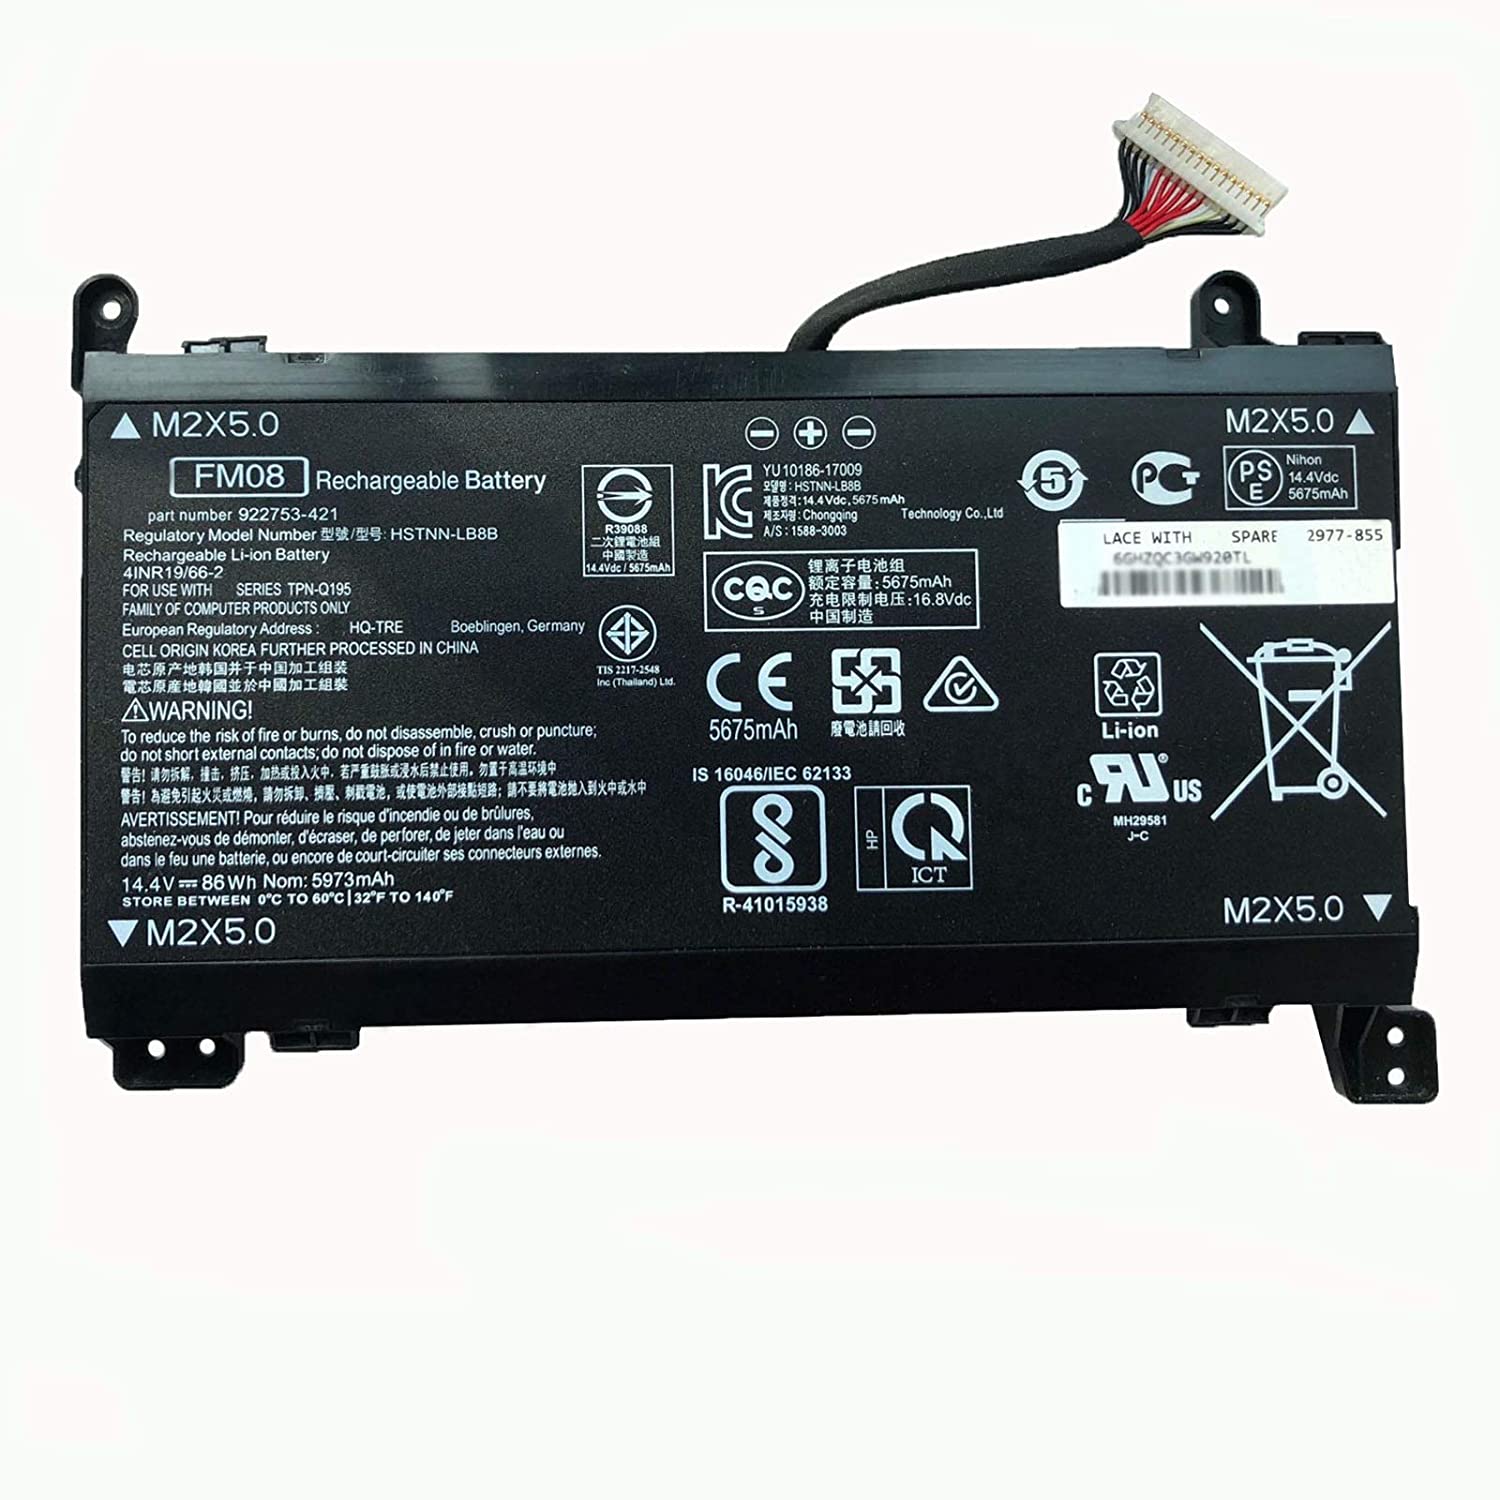 Splendid Branded Laptop Battery for HP FM08 High Quality Battery